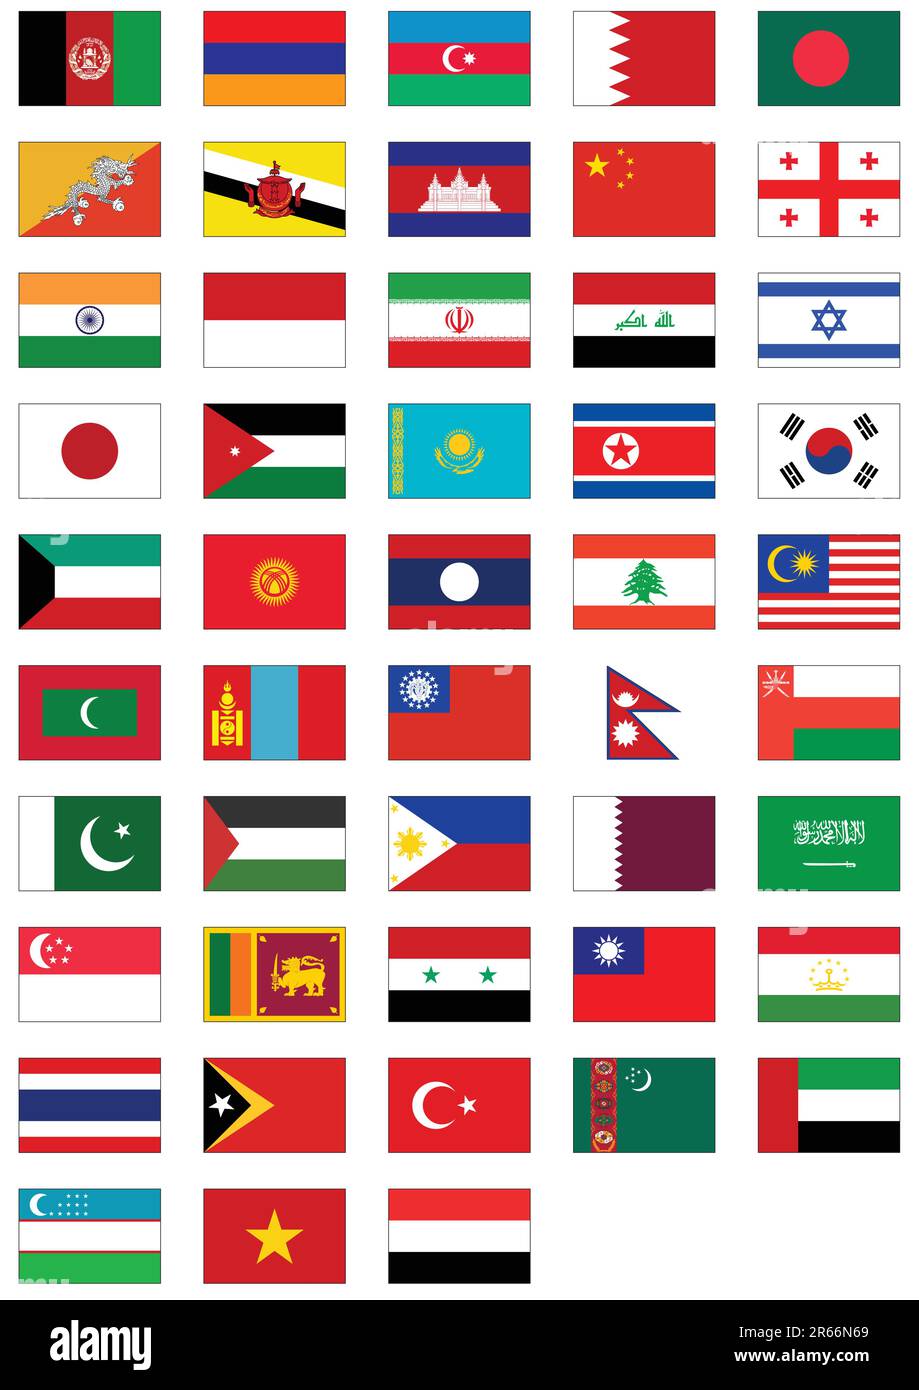 Kompletter Vektorsatz von Flaggen aus Asien. Alle Objekte werden gruppiert und mit dem Ländernamen versehen. Stock Vektor